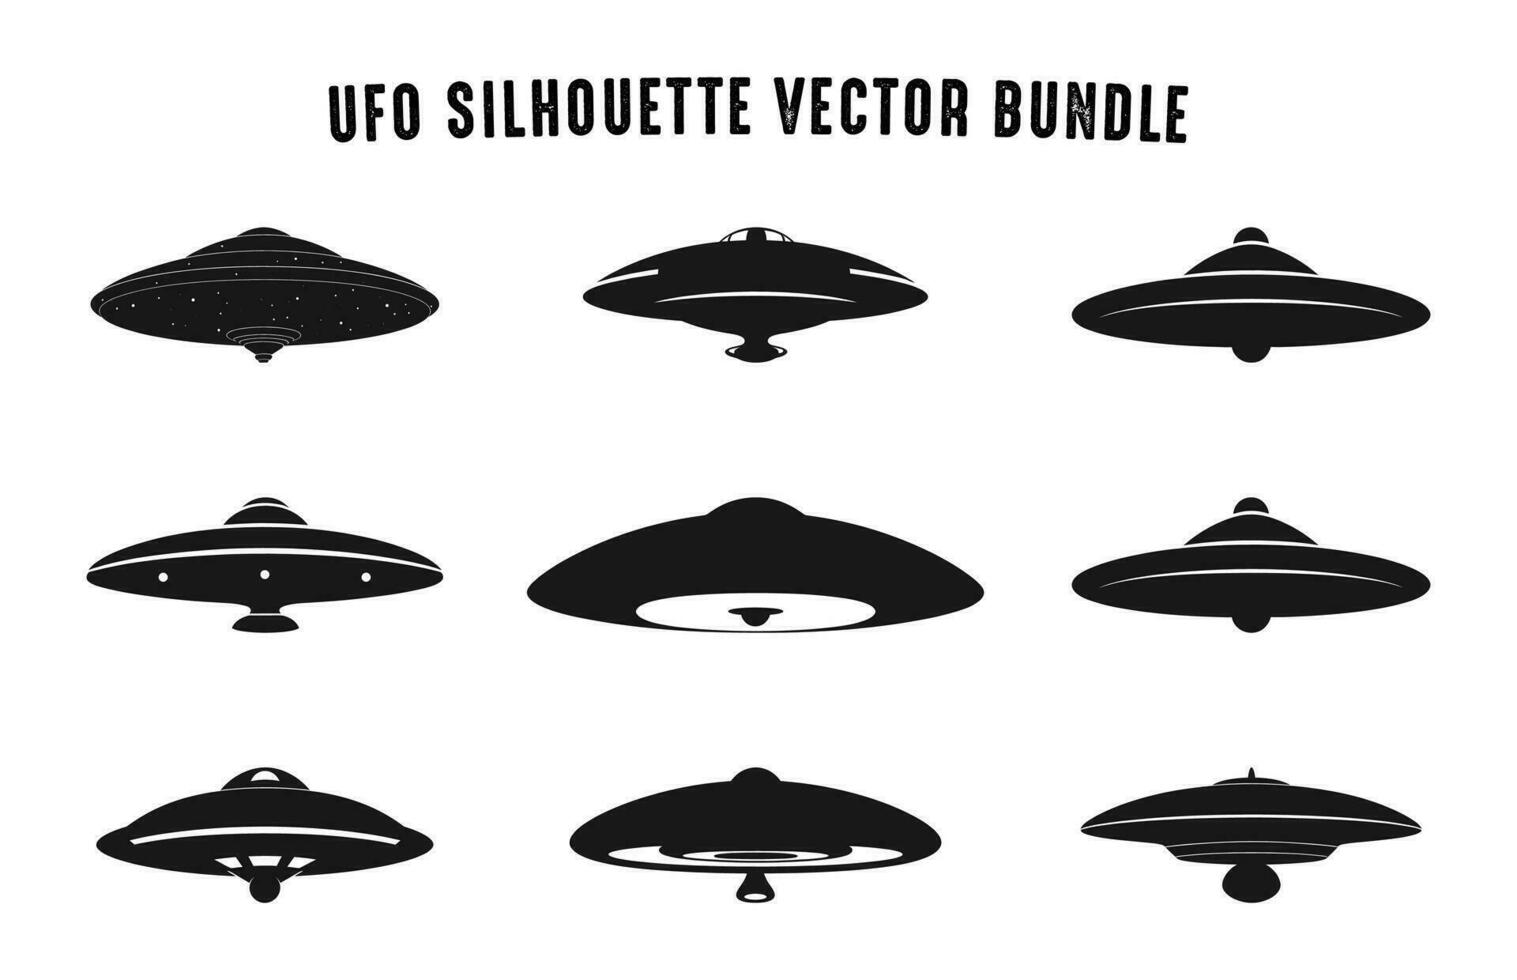 OVNI silhouette noir vecteur ensemble, en volant soucoupe silhouettes empaqueter, vaisseau spatial OVNI icône collection